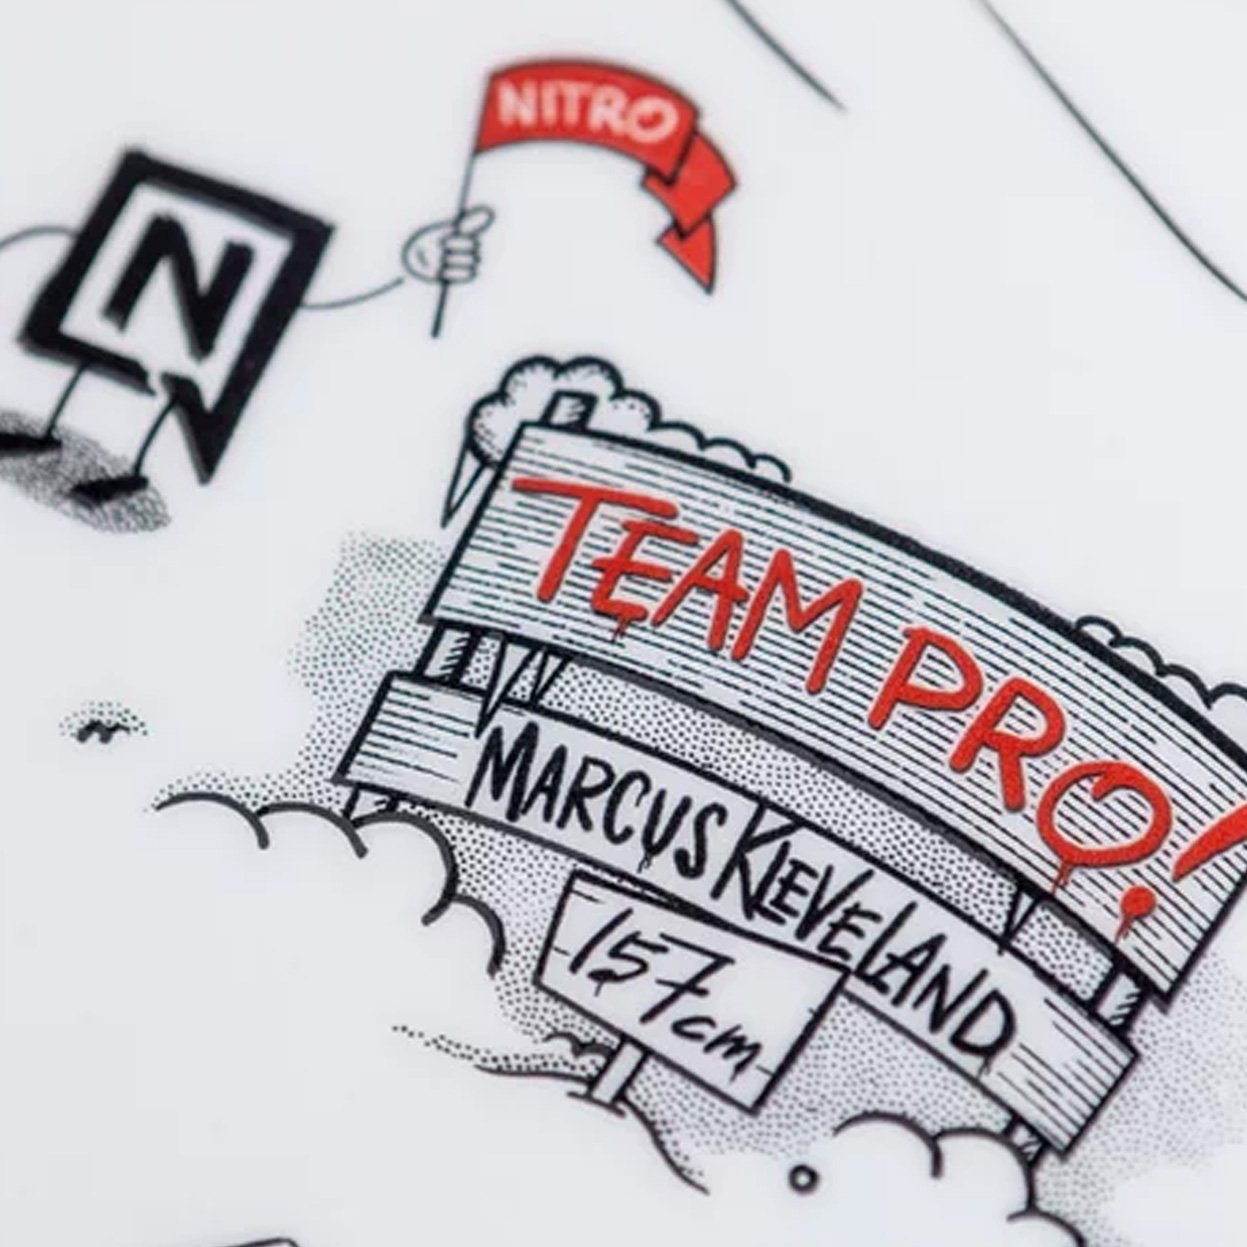 Nitro Team Pro Markus Kleveland All Mountain/Freestyle Snowboard